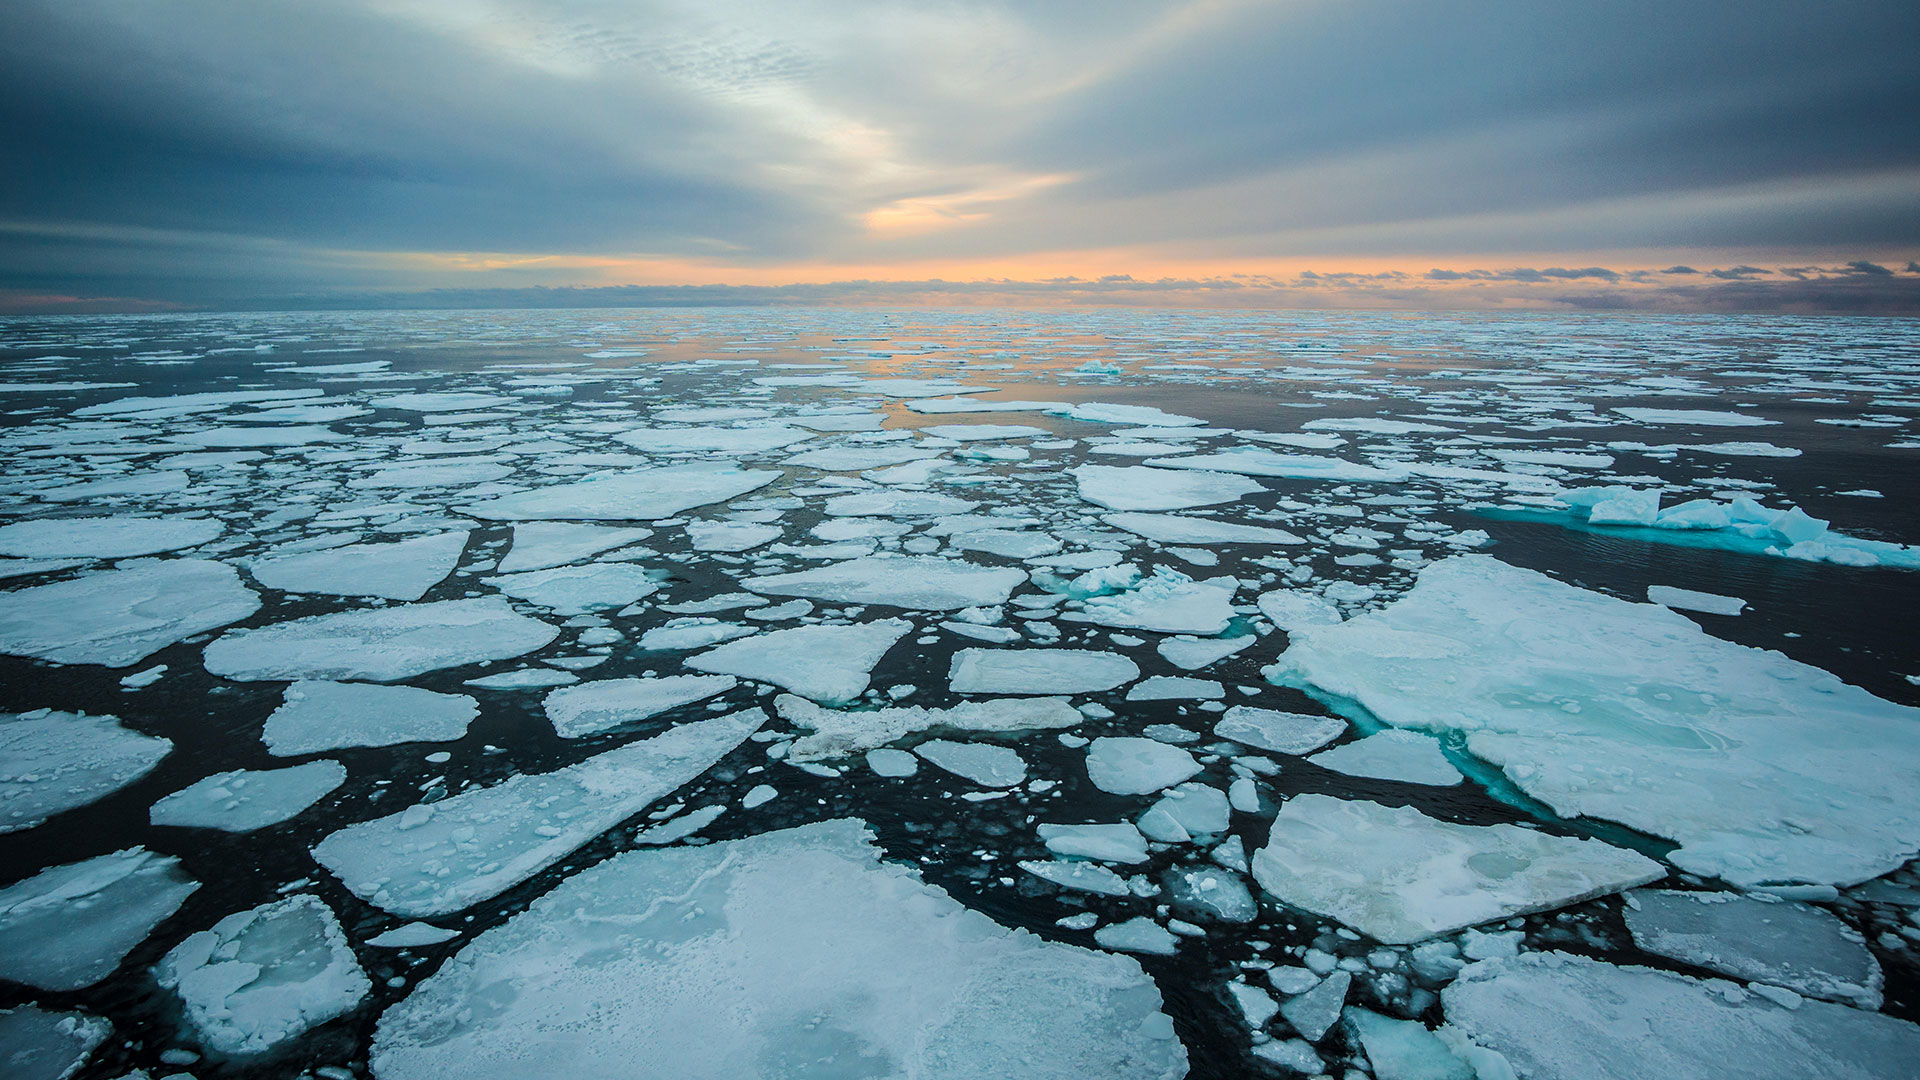 La gente en el Ártico depende particularmente de la red alimentaria marina para su suministro de proteínas, por ejemplo, a través de la caza o la pesca. Esto significa que también están expuestos a los microplásticos y químicos que contiene
(Grosby)